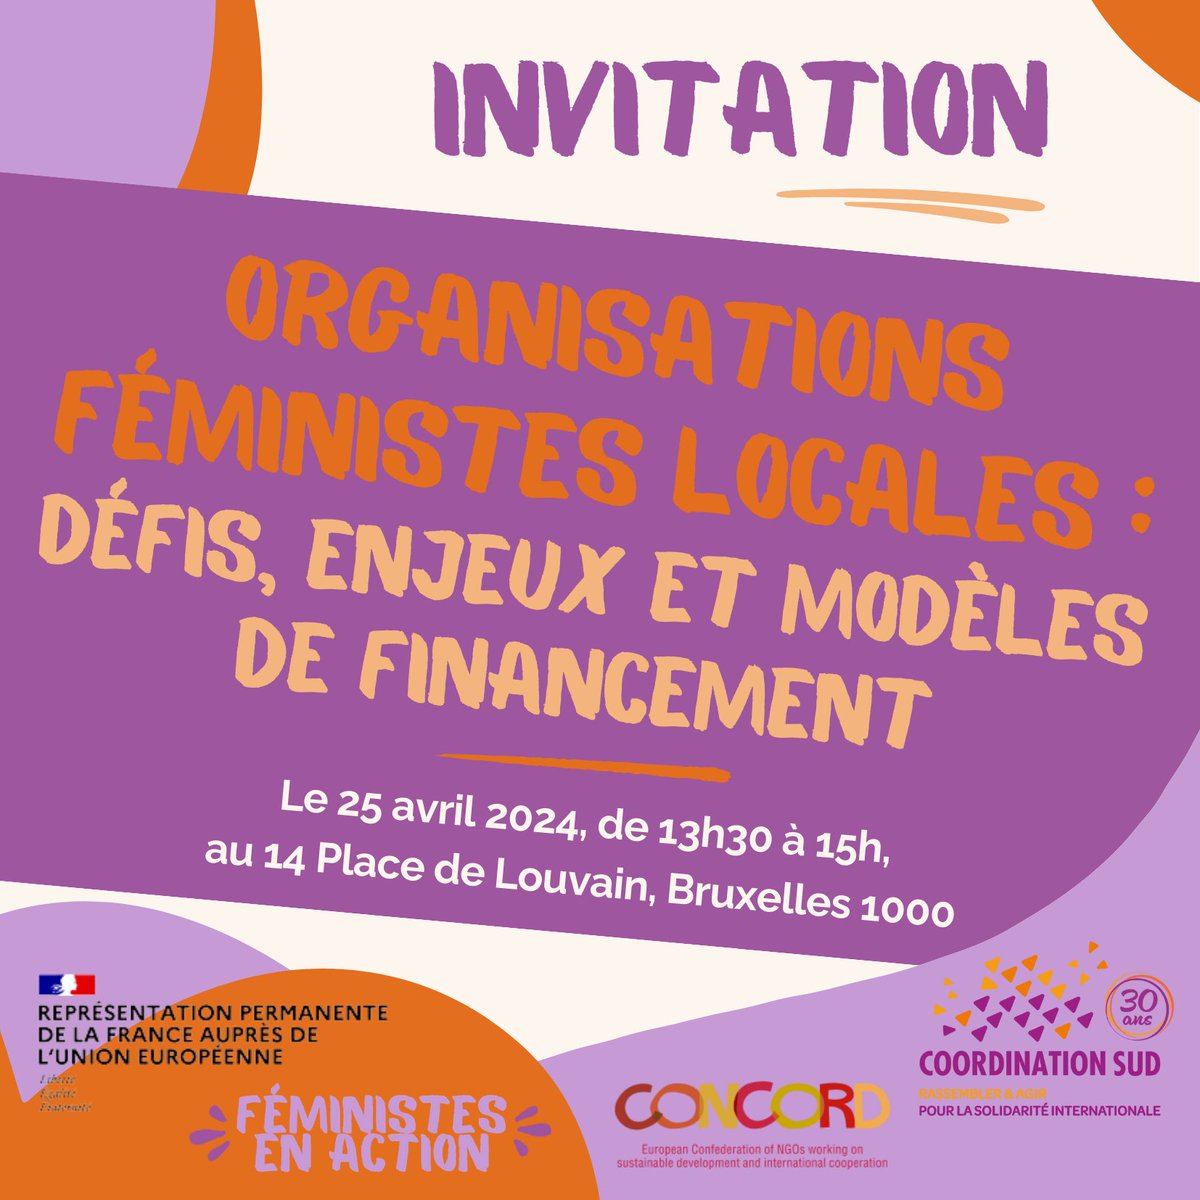 📢 Élections européennes : Le @HCEfh appelle à une mobilisation pour une politique étrangère féministe et soutien accru de 🇪🇺 aux OSC œuvrant pour les droits des femmes. Demandes également portées par @coordinationsud, avec un évènement ce jeudi à la @RPFranceUE. #FSOF #UE